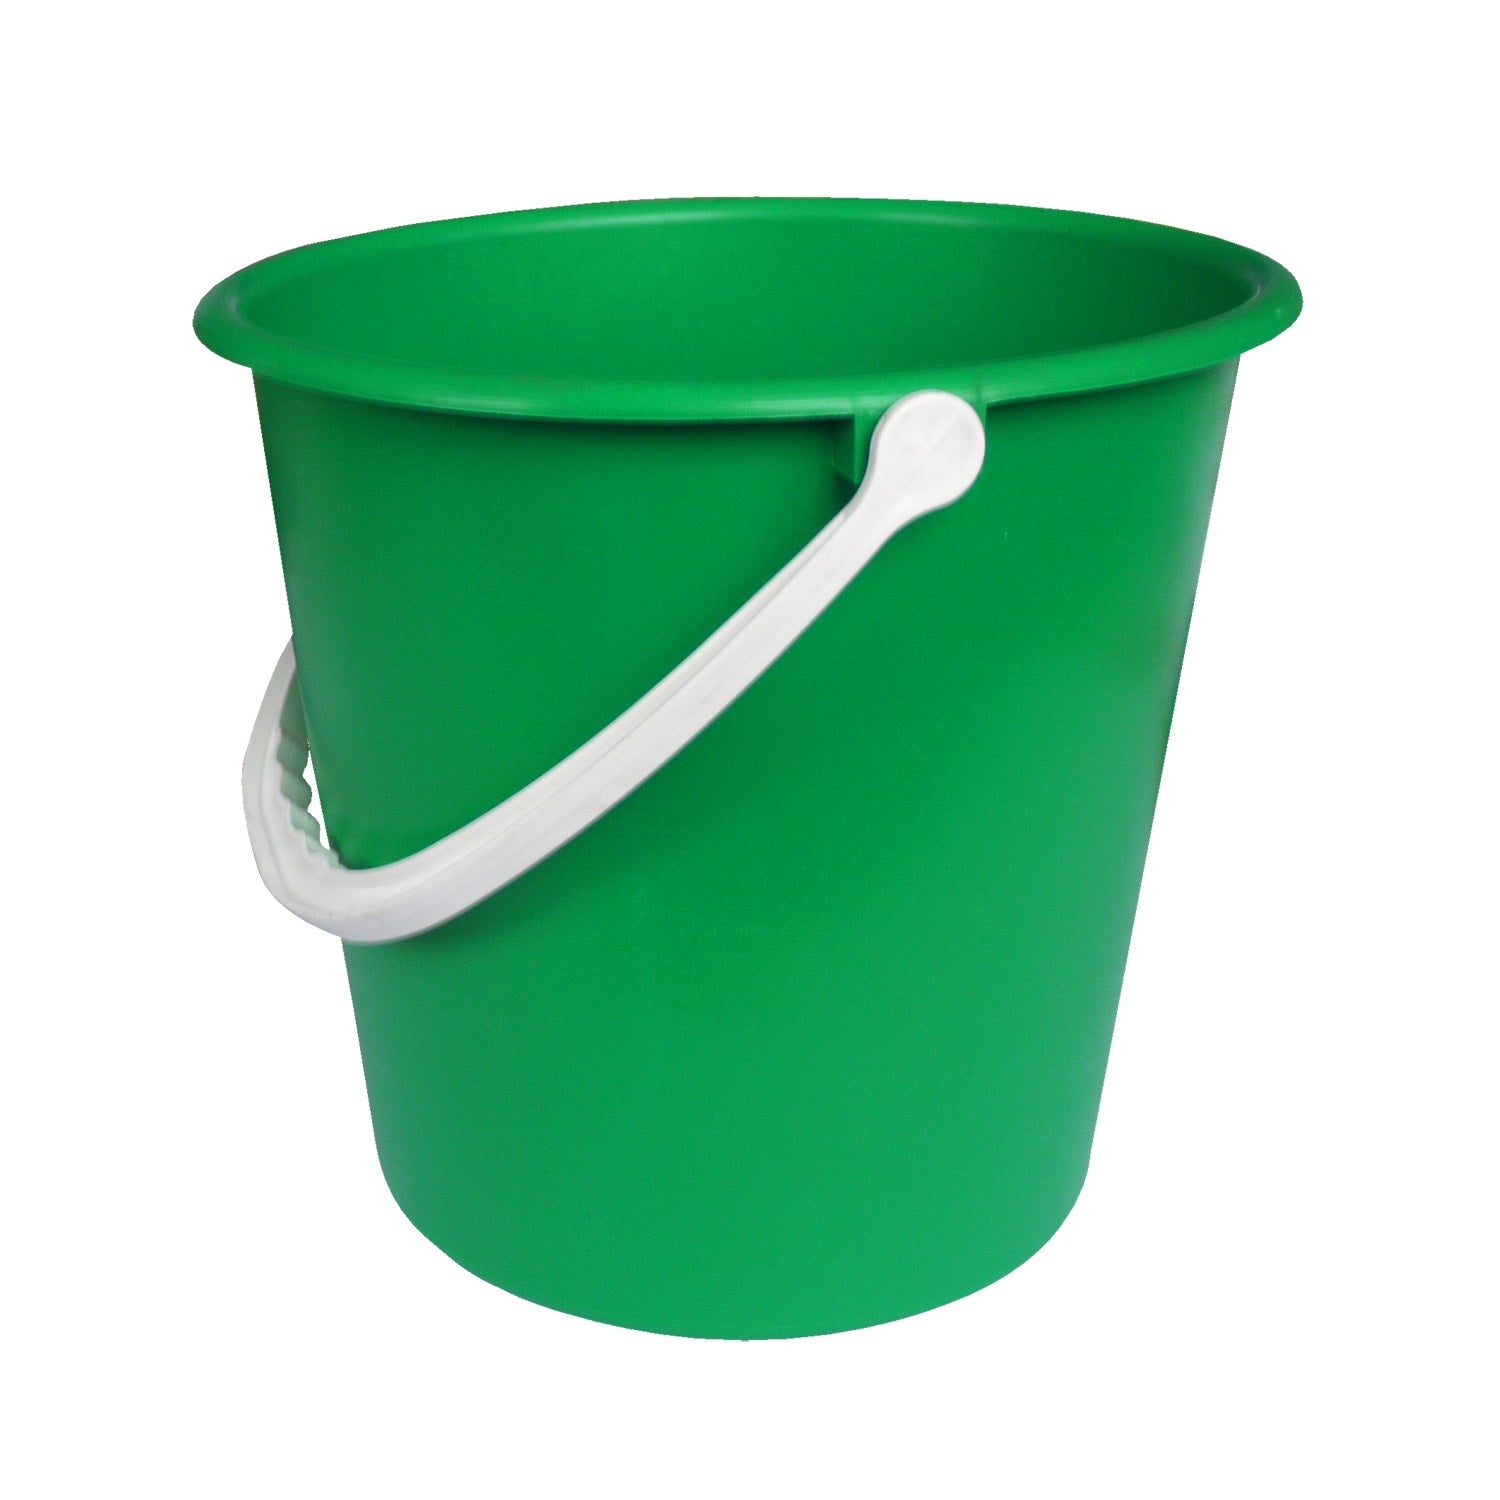 Standard Green Bucket - 9 Litre